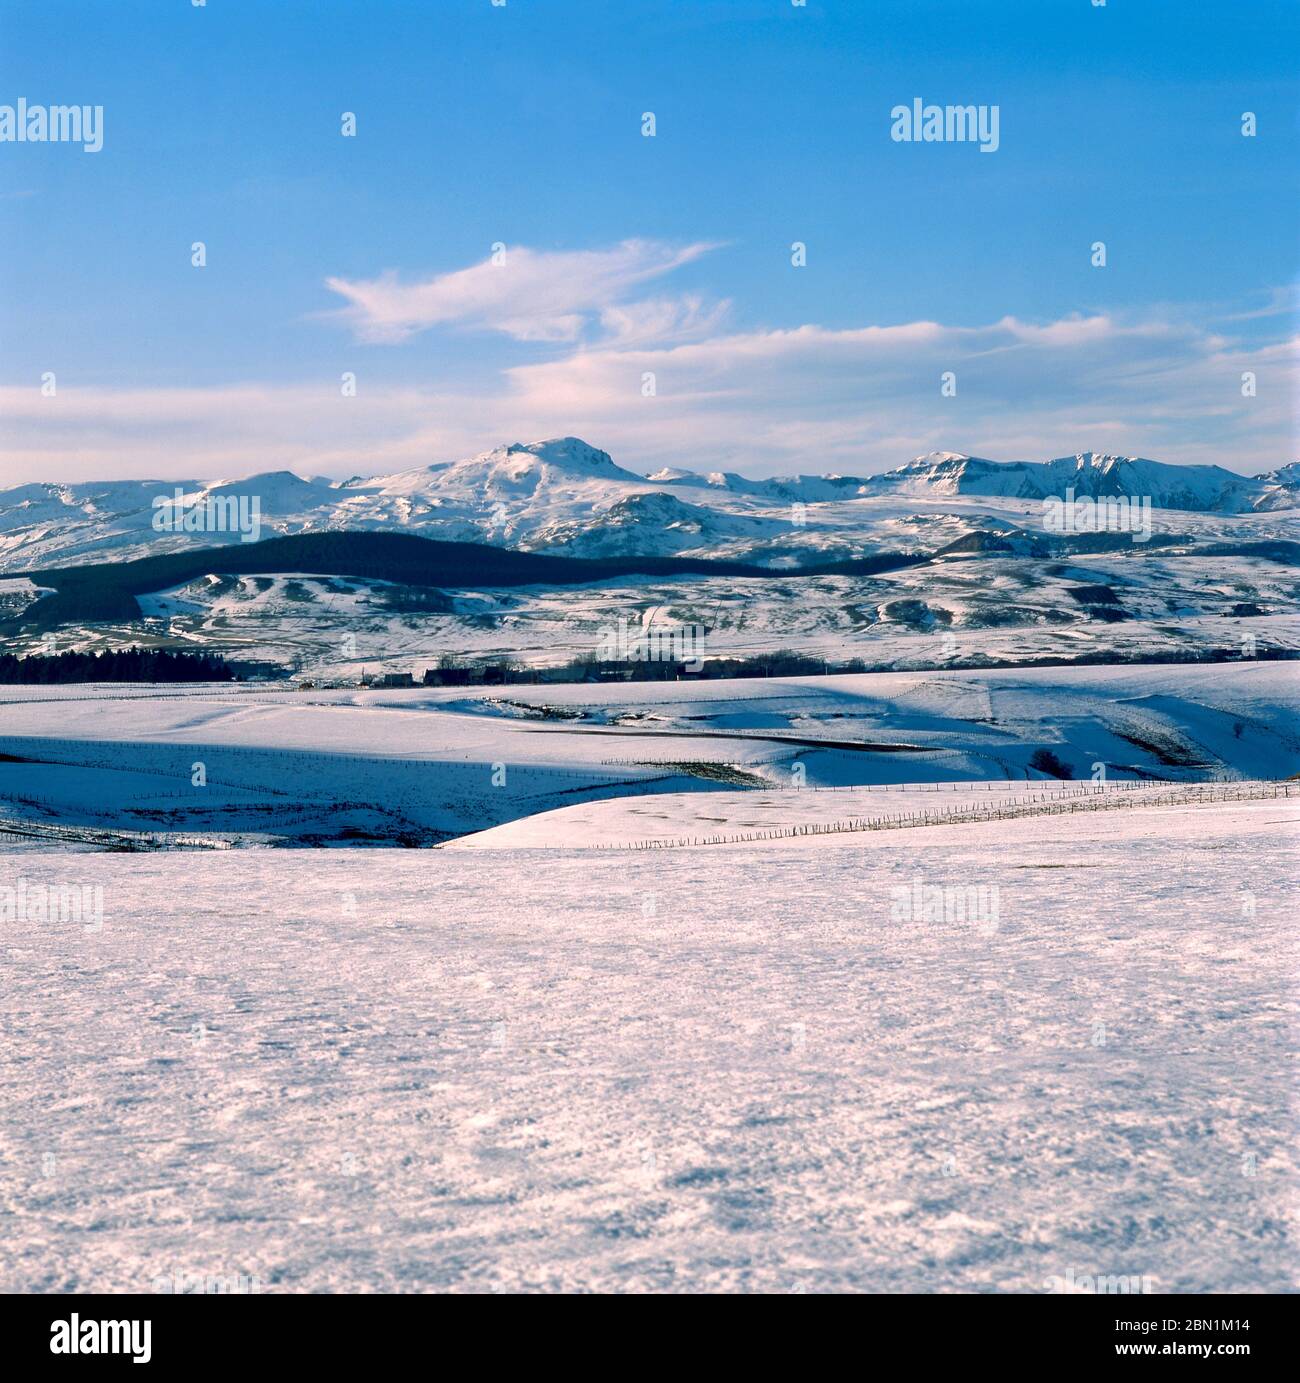 Blick auf das Sancy Massif im Winter, regionaler Naturpark der Vulkane der Auvergne, Puy de Dome, Auvergne-Rh -Alpen, Frankreich Stockfoto